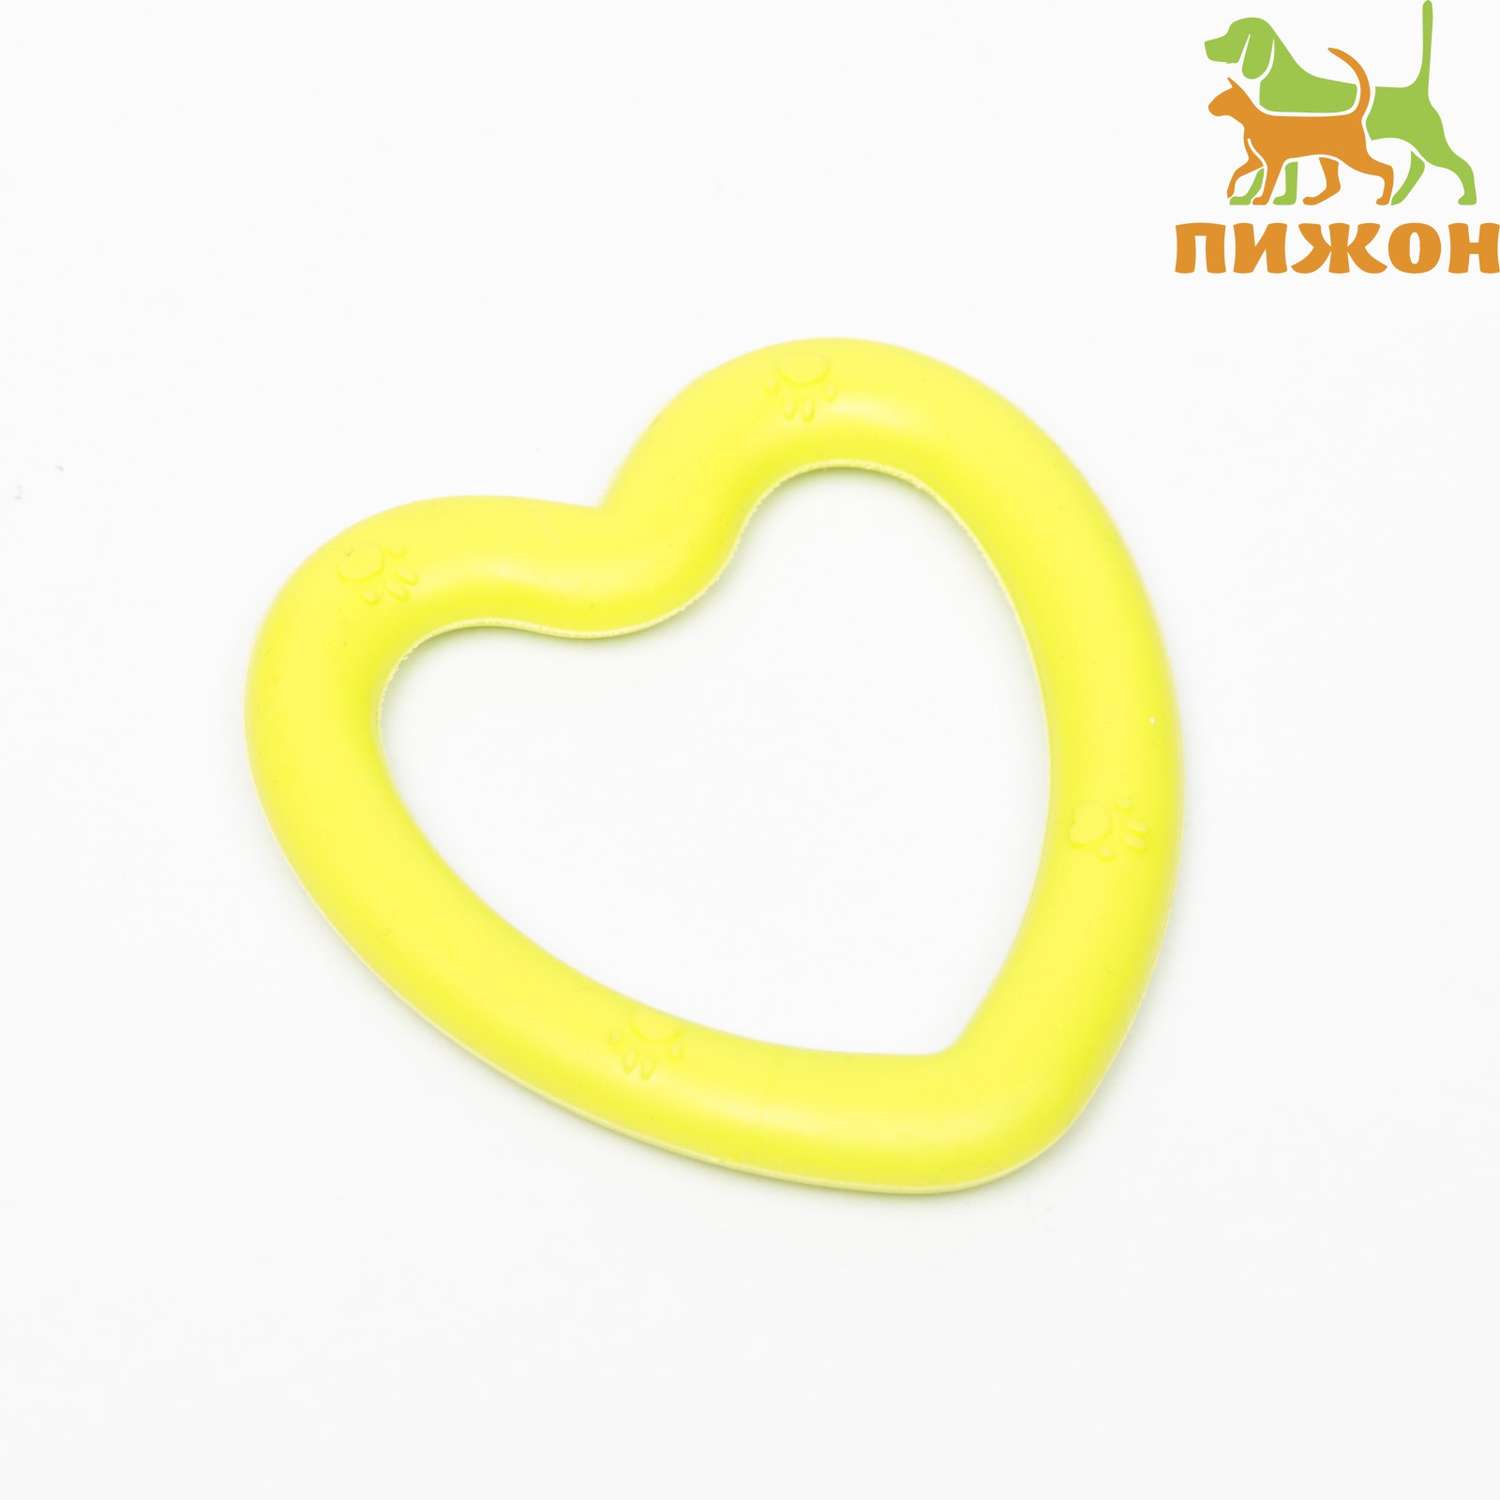 Игрушка Пижон жевательная «Сердце» TPR 8х7.5 см жёлтая - фото 1